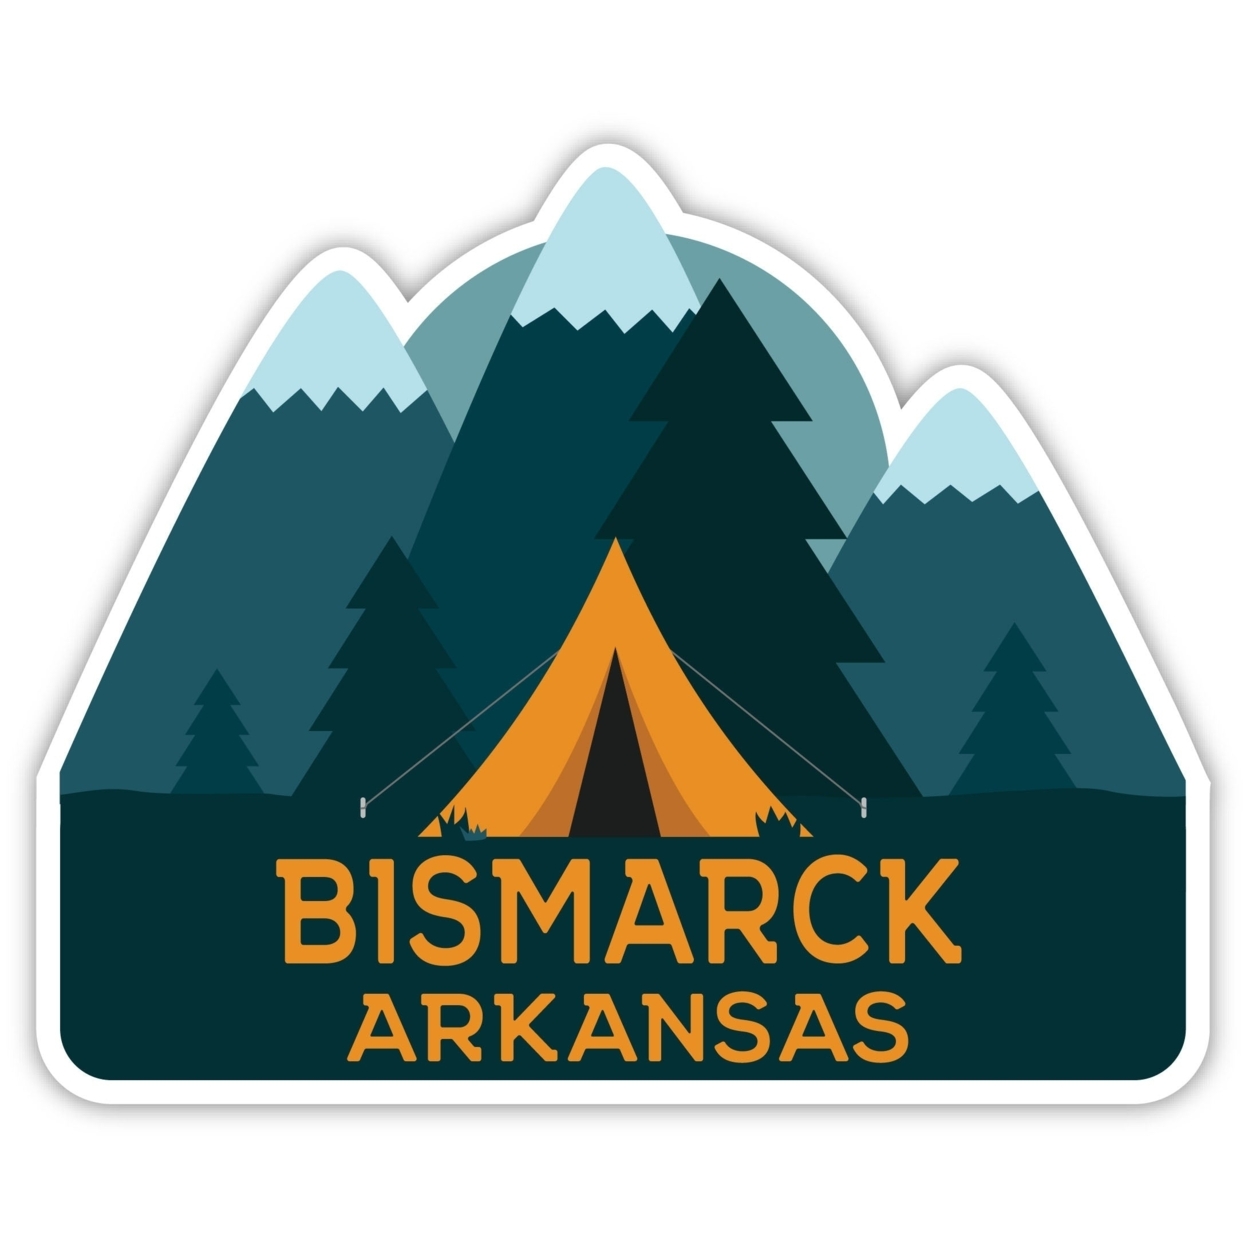 Bismarck Arkansas Souvenir Decorative Stickers (Choose Theme And Size) - Single Unit, 2-Inch, Tent